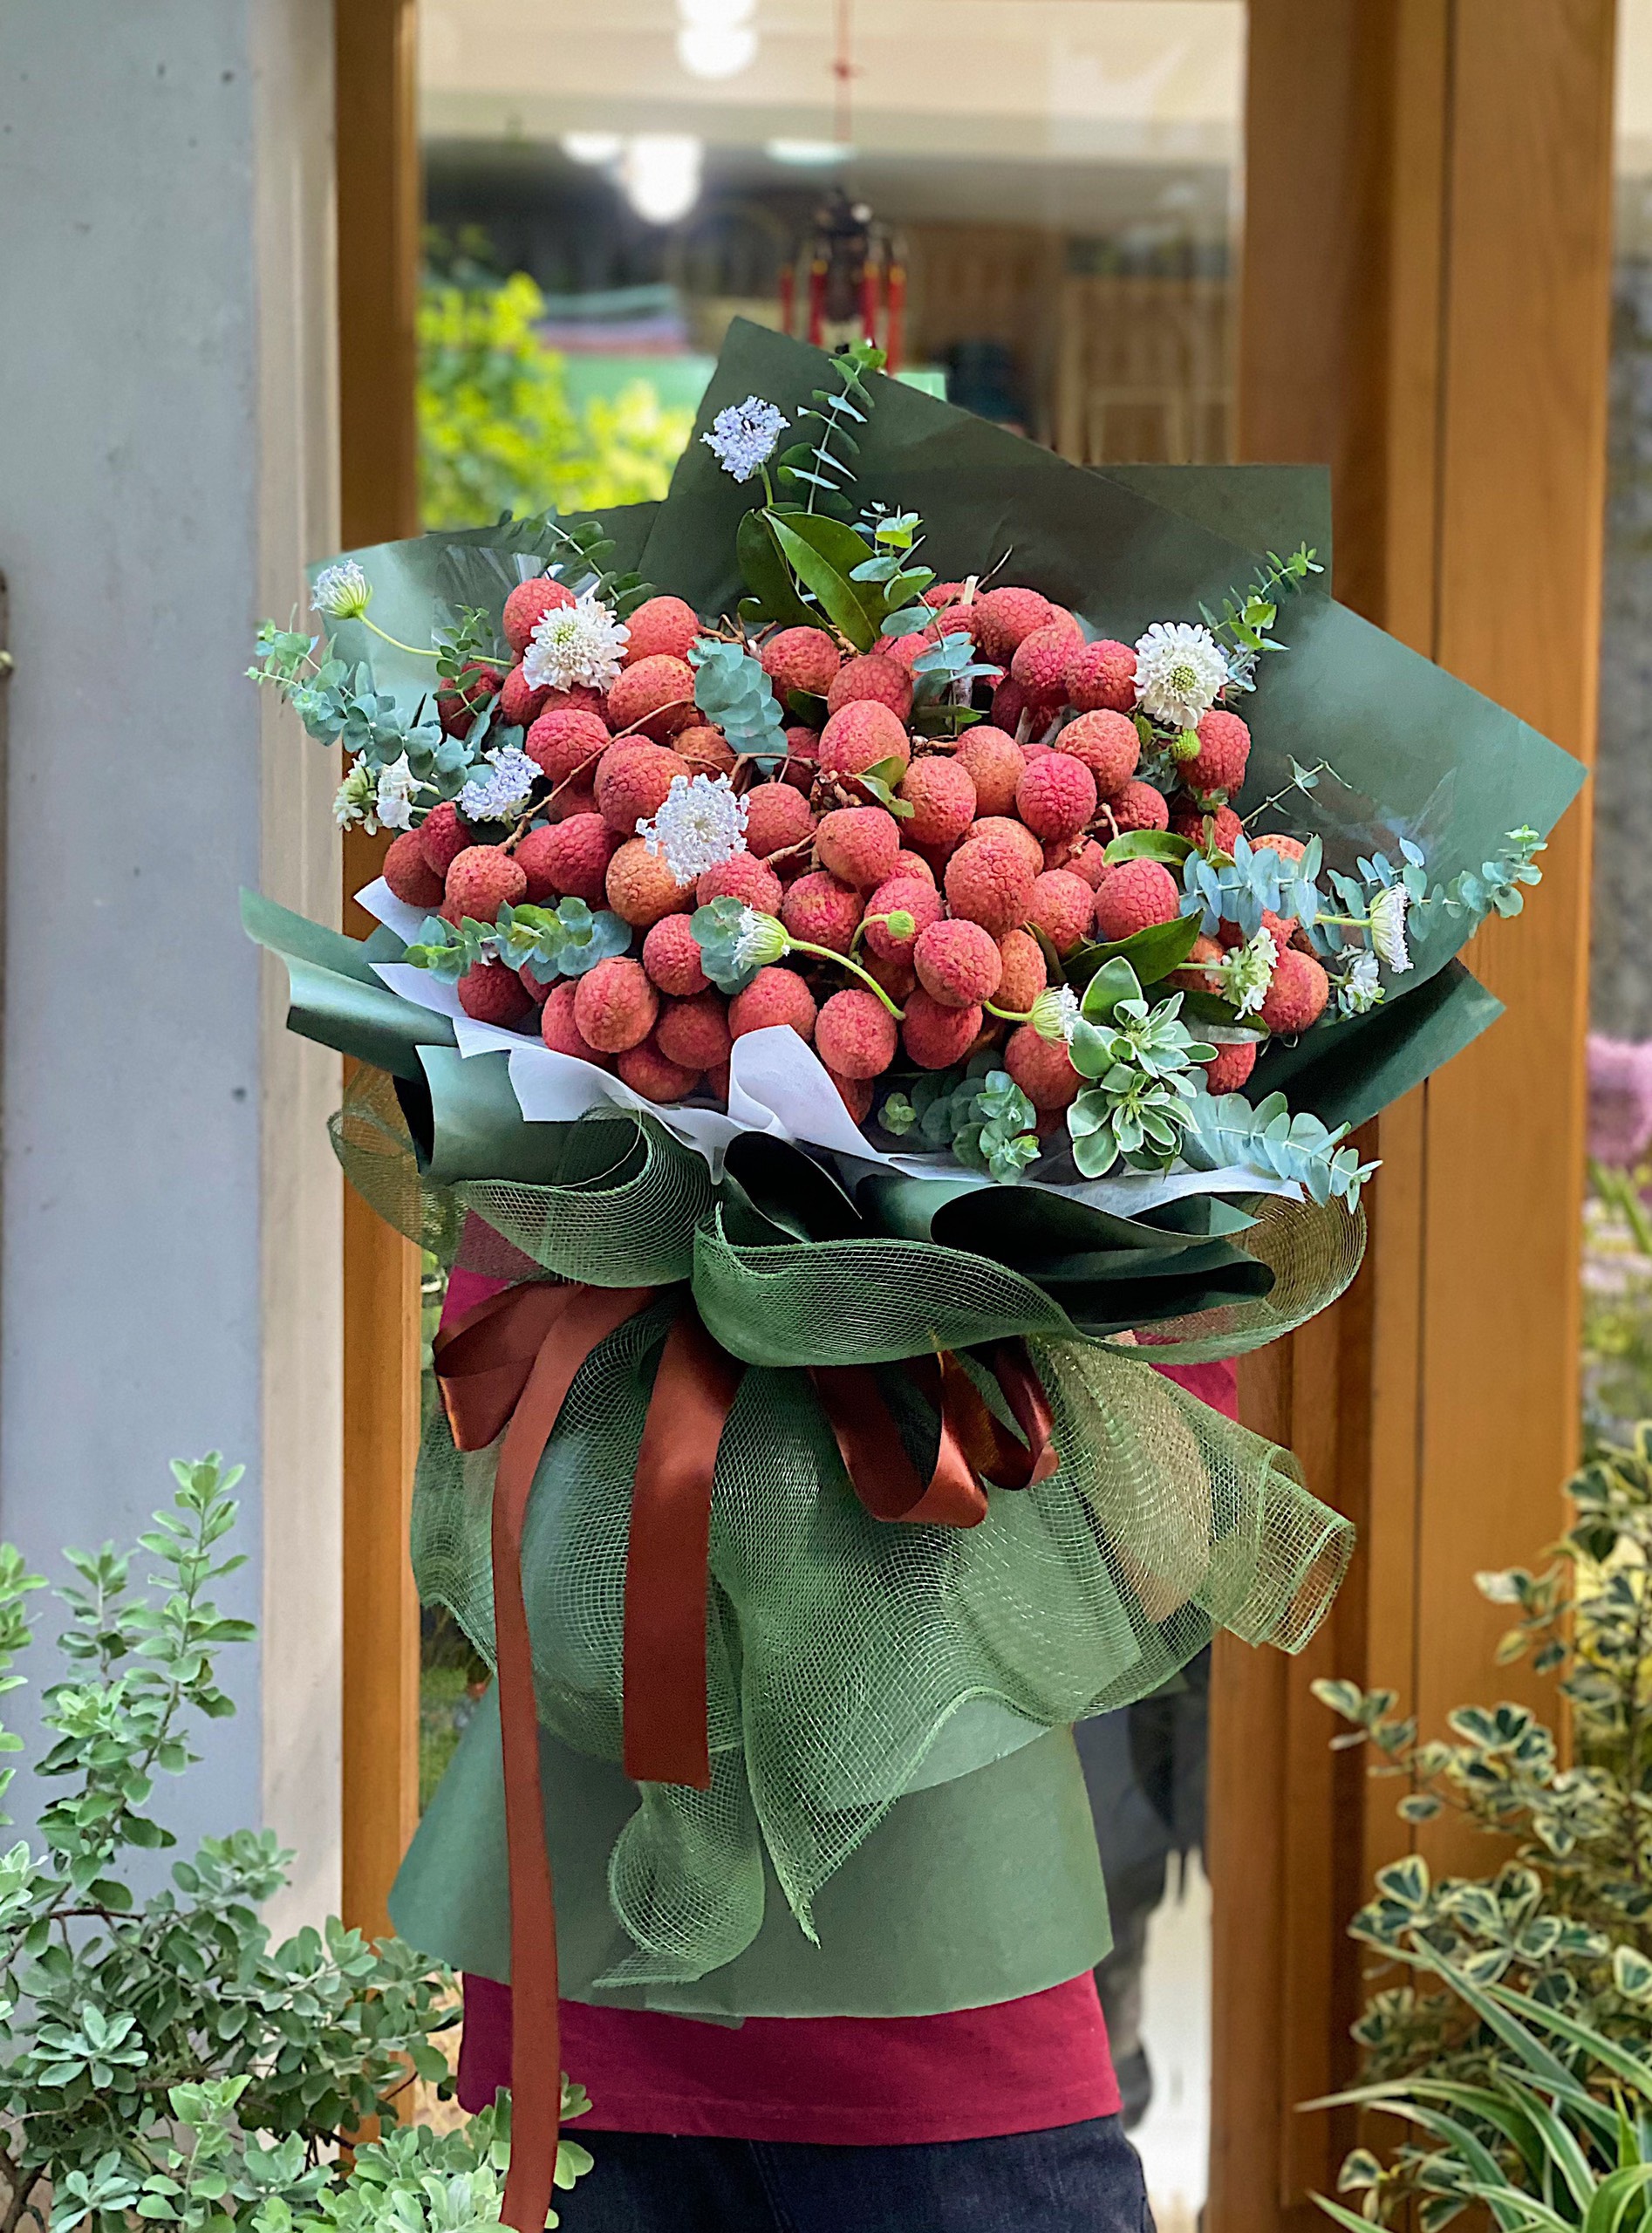 Bó hoa trái vải là một sự lựa chọn hoàn hảo cho bất kỳ dịp đặc biệt nào, từ sinh nhật cho đến lễ kỷ niệm. Hãy xem qua hình ảnh để cảm nhận được sự tinh tế và đẹp mắt của những bó hoa này.